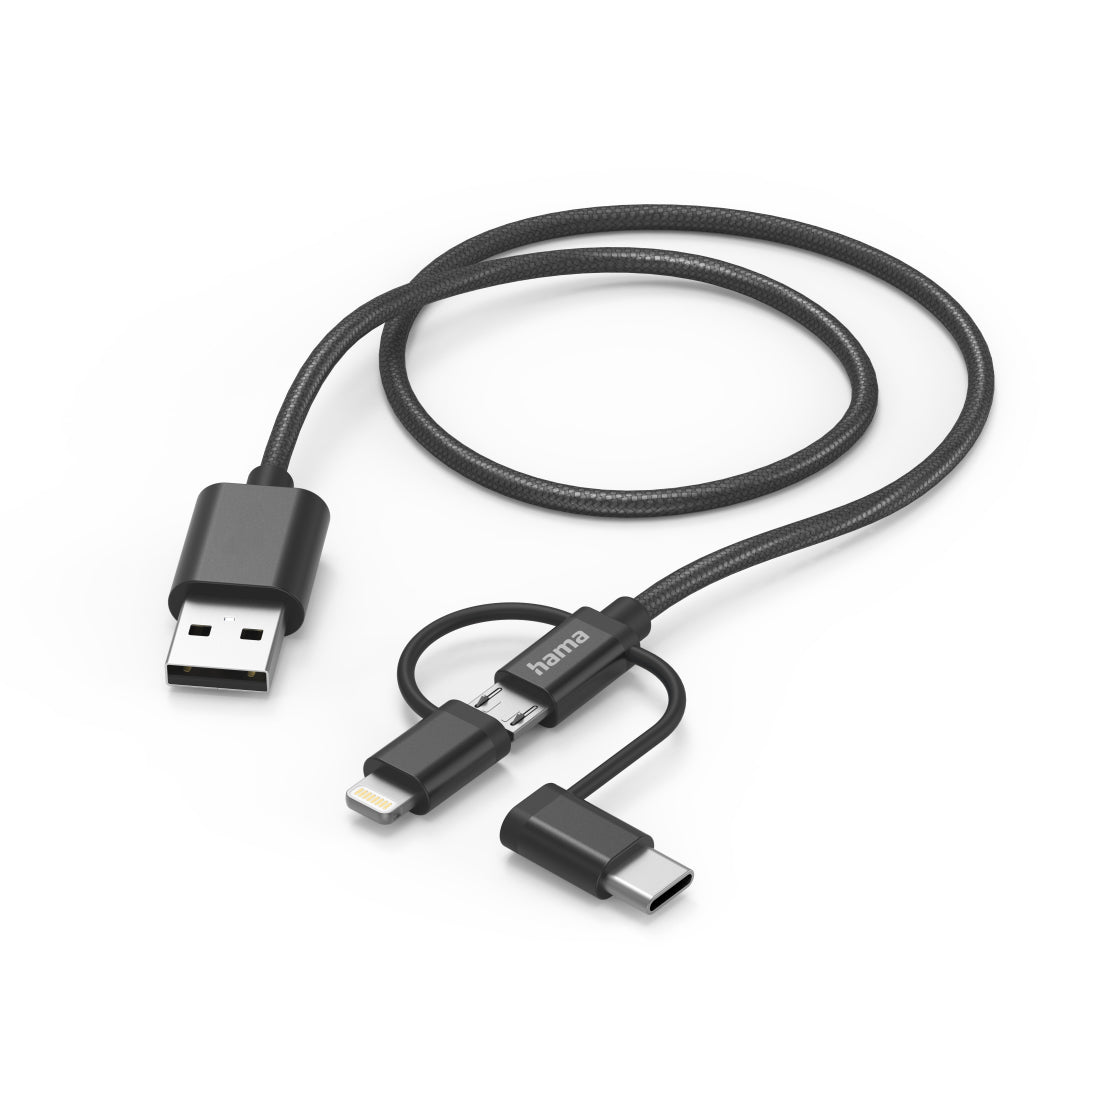 Cabo HAMA 3in1 micri USB +USB-C +LTG, 1.5m,preto